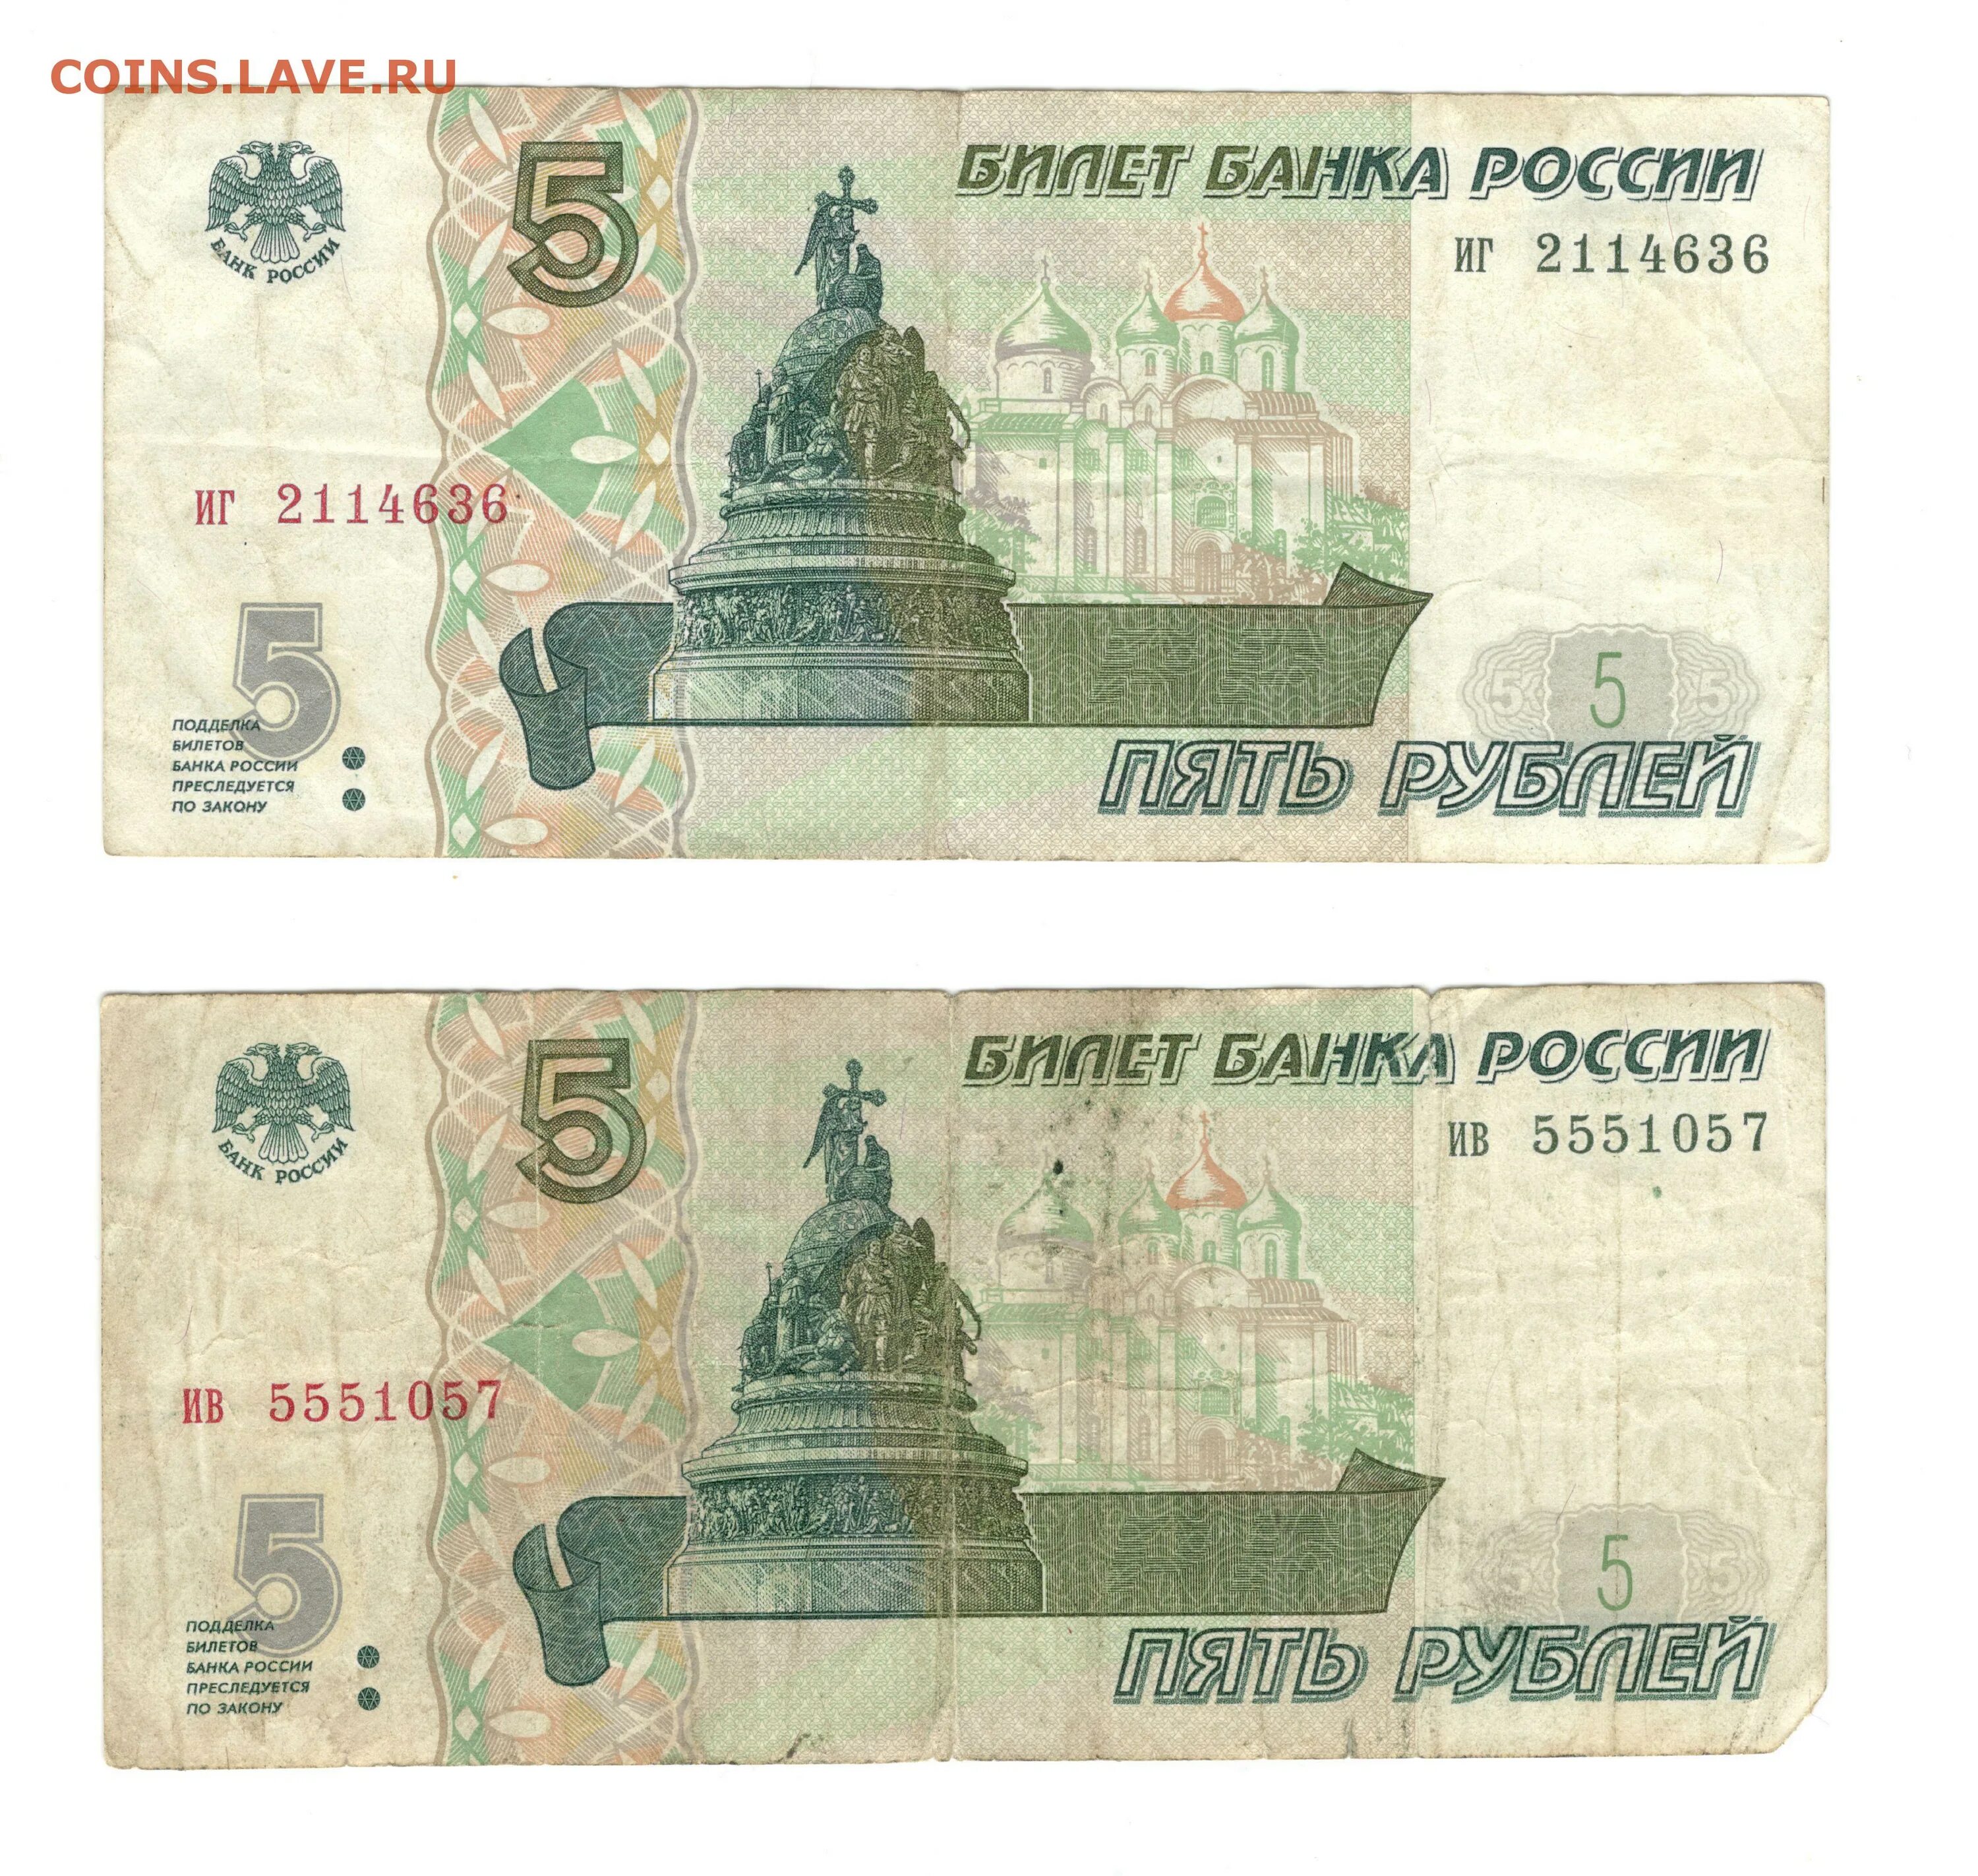 5 Рублей сейчас бумажные. 5 Рублей 97 года бумажные. 5 Рублей России бумажные. Банкнота 5 рублей 1997.